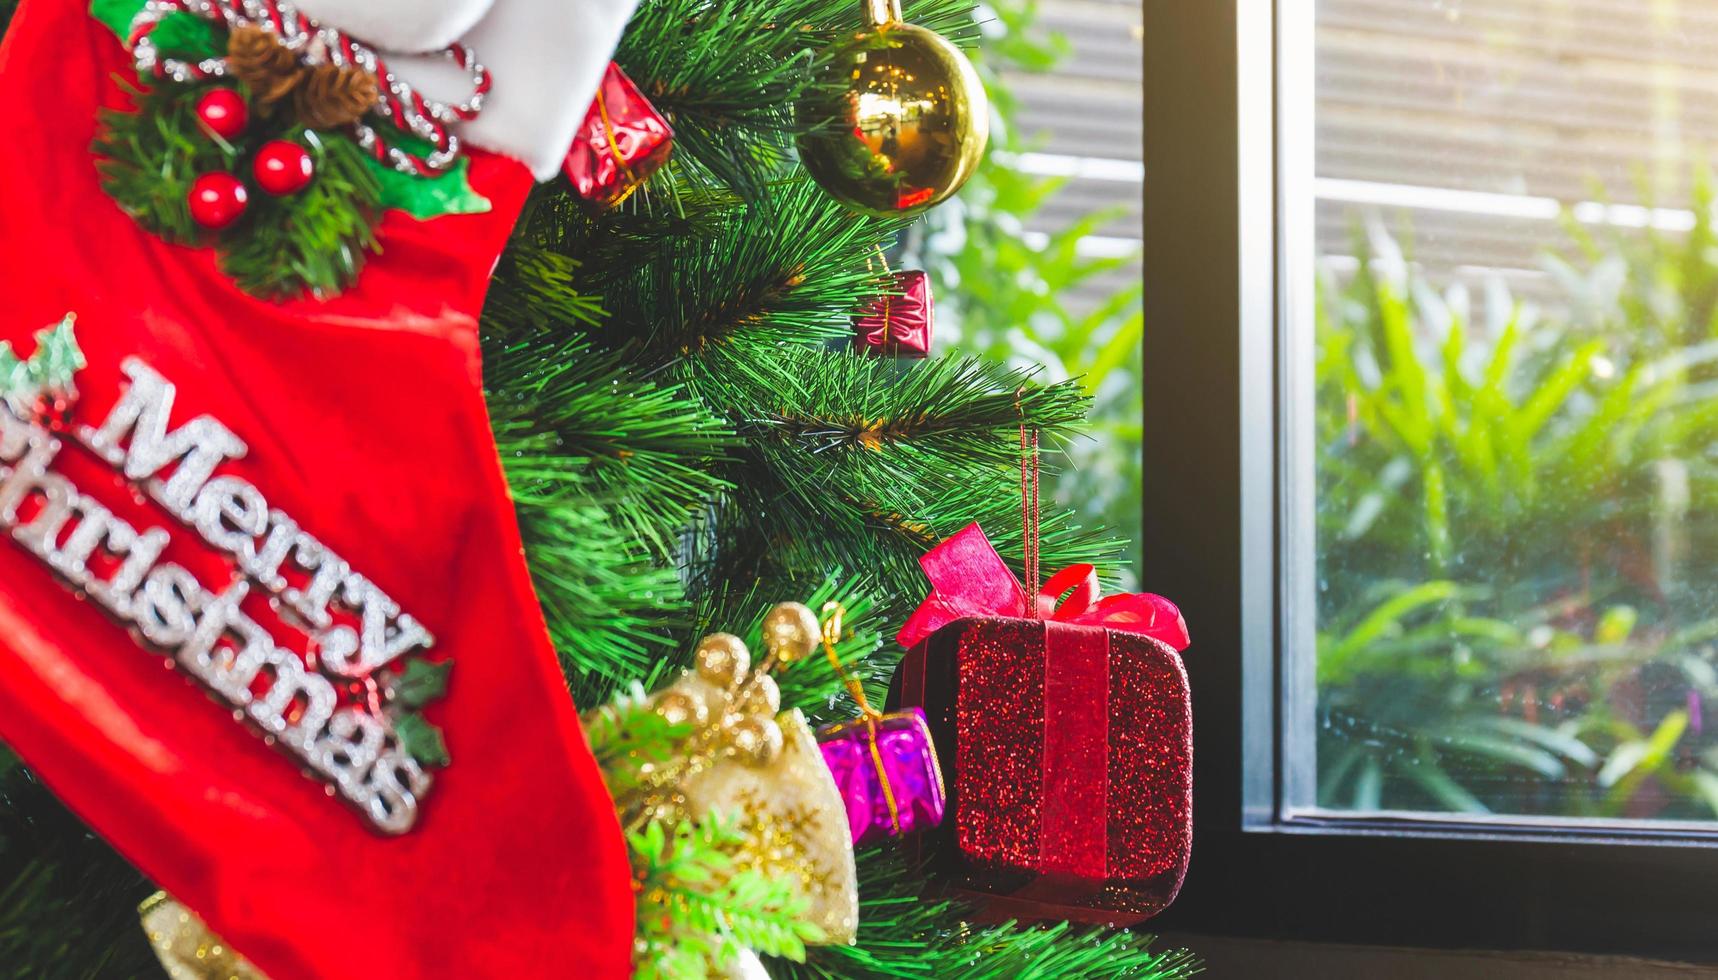 kerstboom met versieringen, woonkamer ingericht voor kerstmis foto